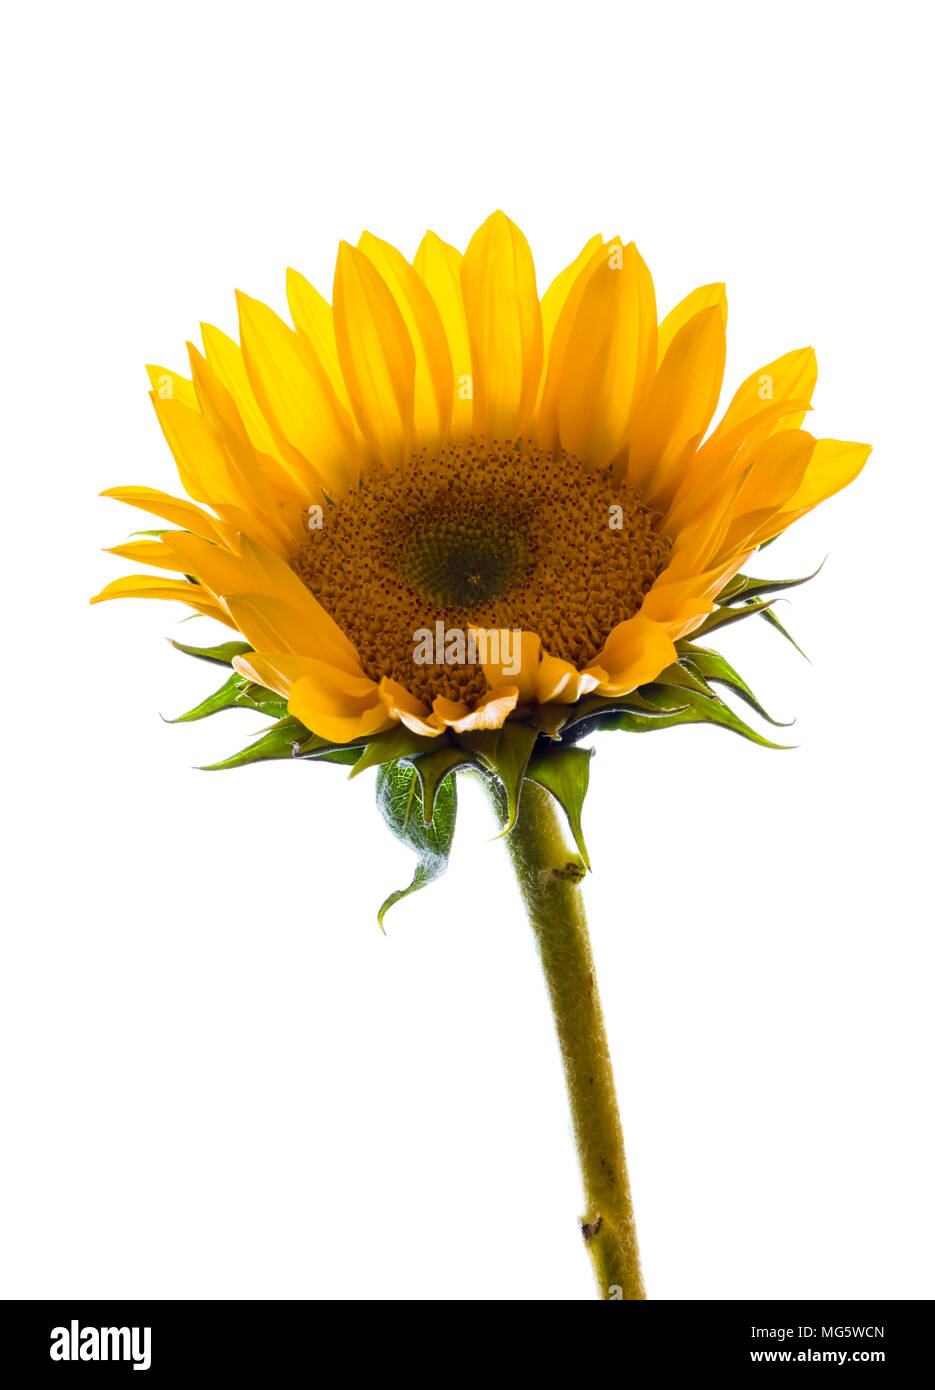 Single Sonnenblume Blume allgemein bekannt als kleine Sonnenblume gegen einen weißen Hintergrund Stockfoto